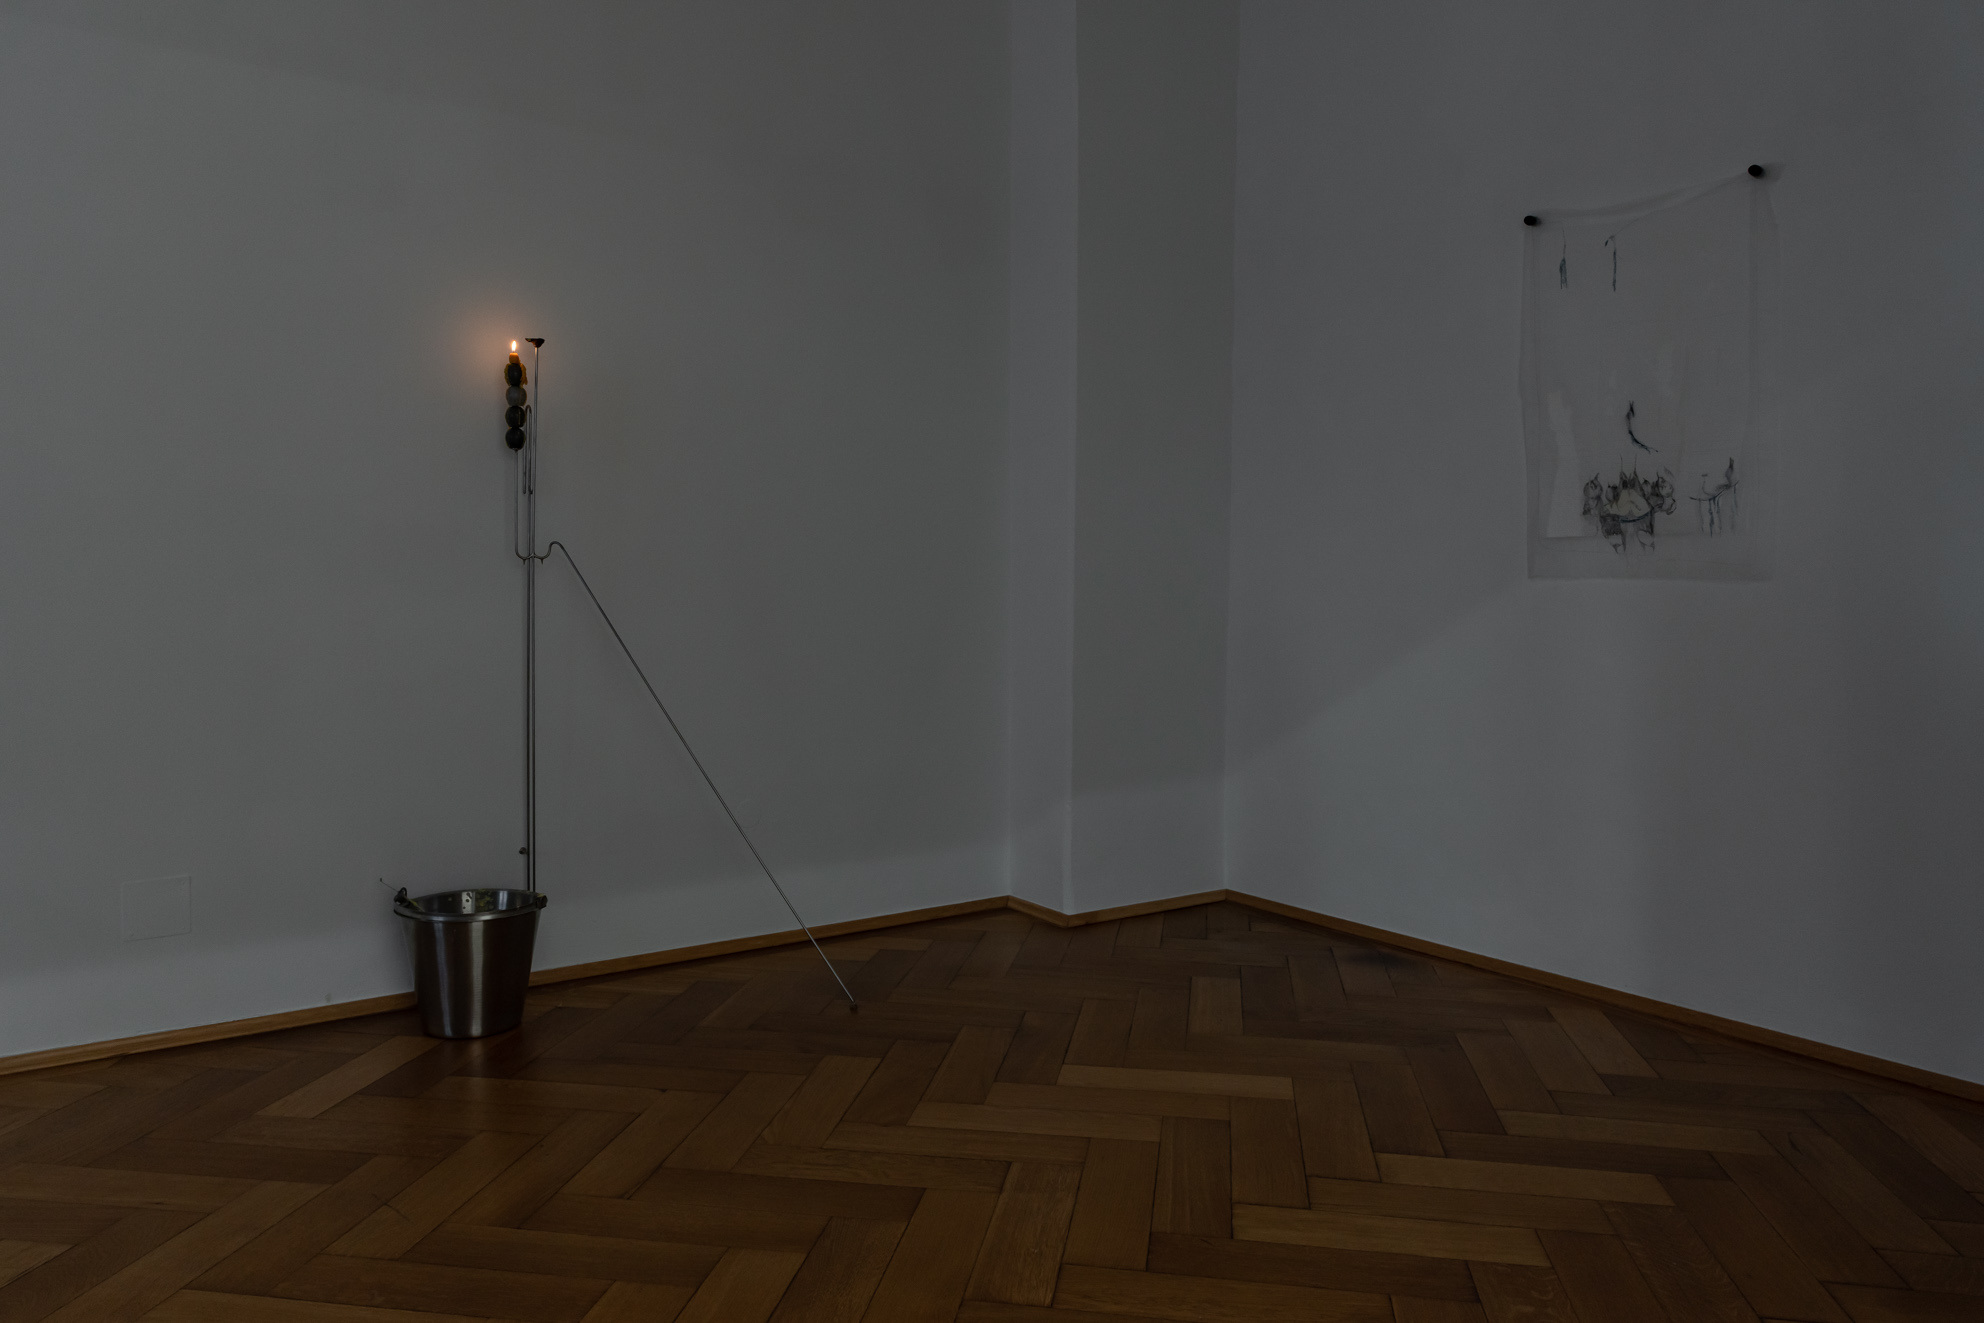 Installation view, Laura Ní Fhlaibhín, "Wet Wishes", Britta Rettberg Munich